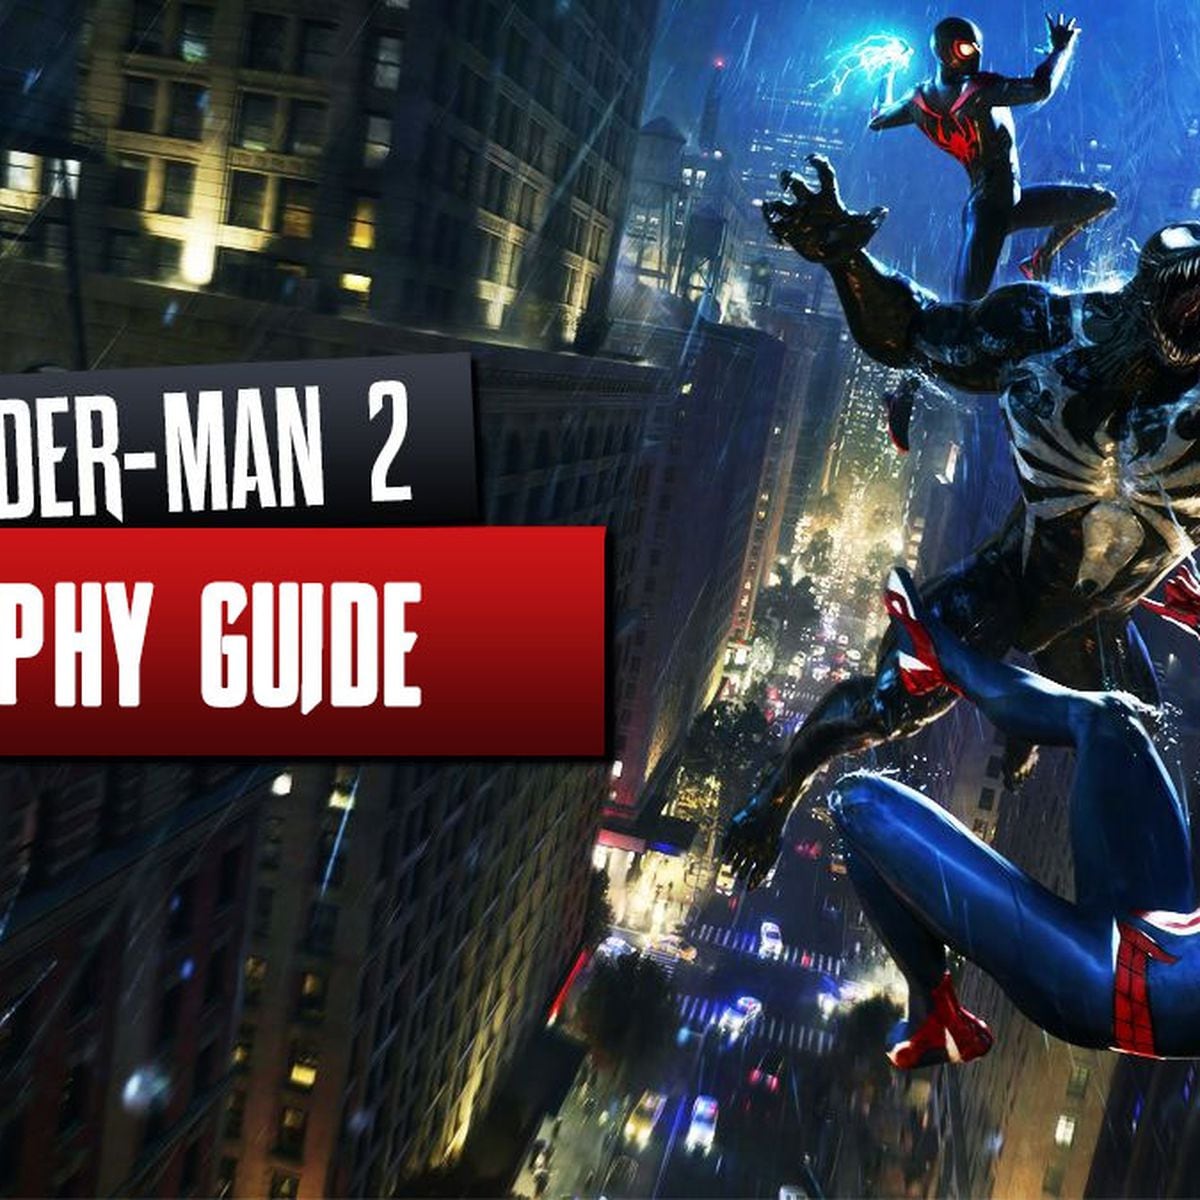 Marvel's Spider-Man 2 Trophy Guide